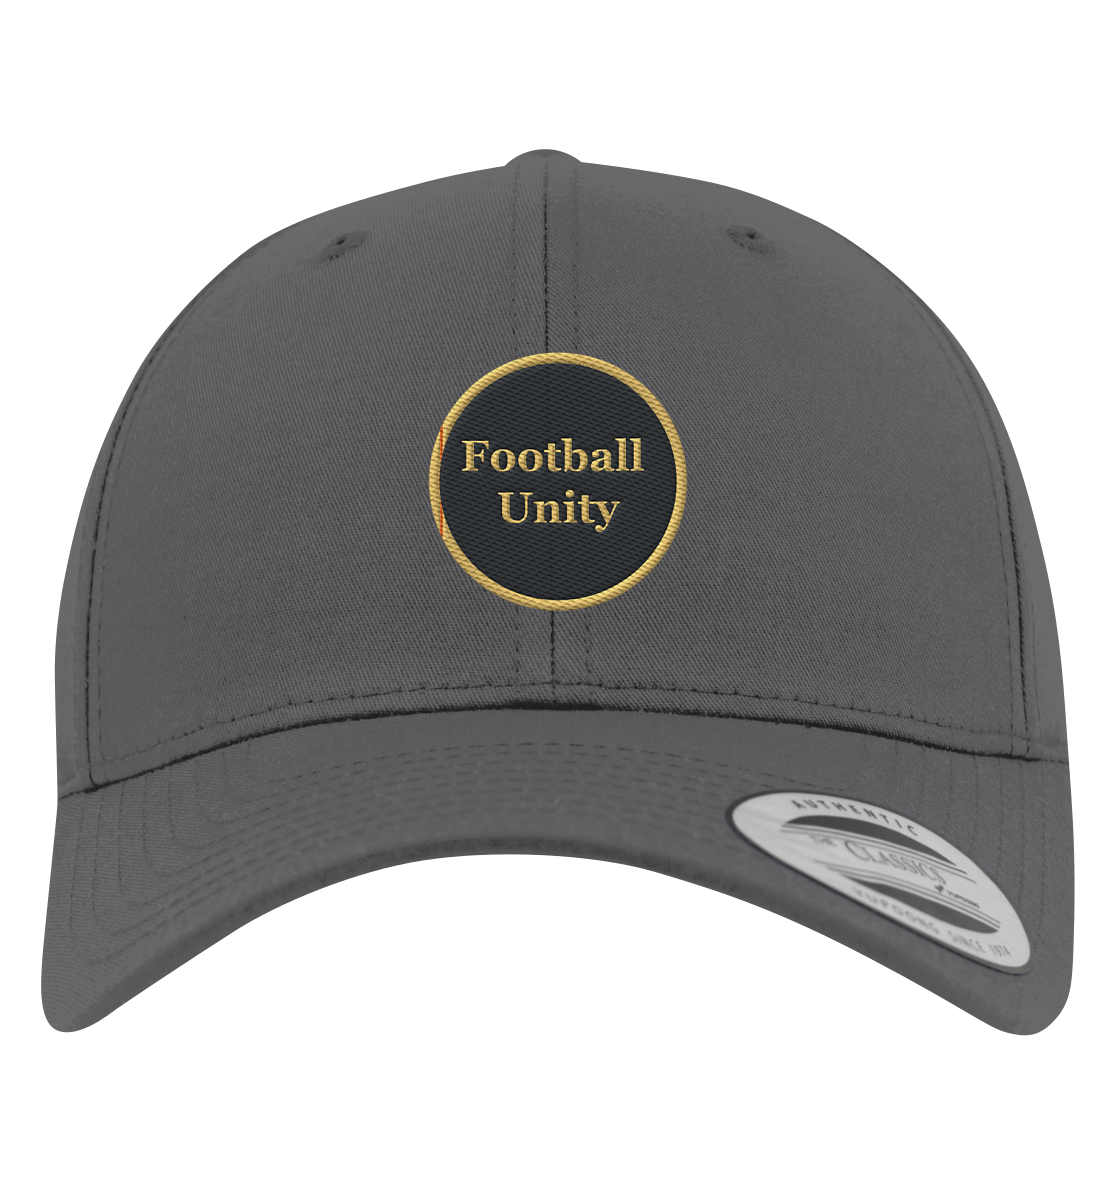 Football Unity Basecap - Premium Baseball Cap - Football Unity Football Unity